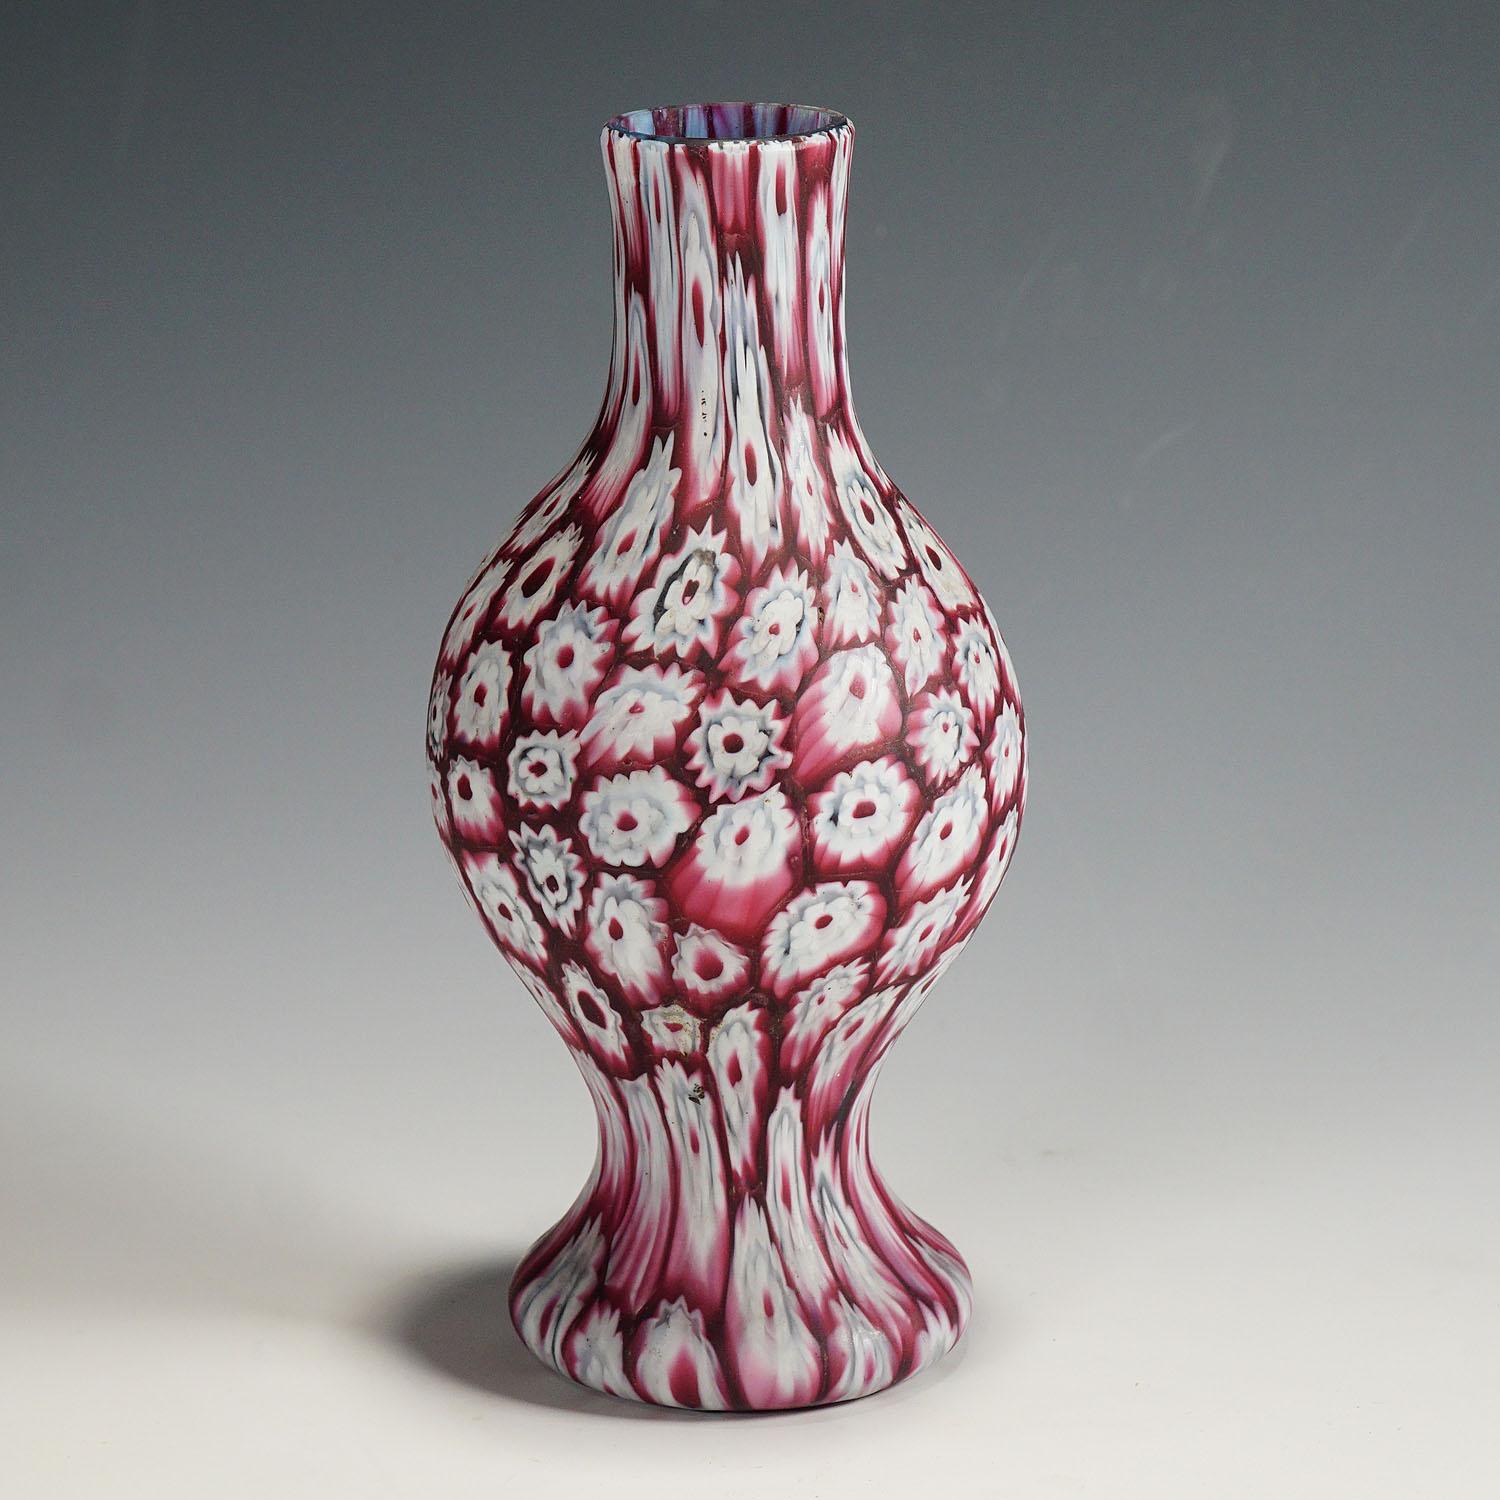 Un très beau vase en verre murrine, fabriqué par Vetreria Fratelli Toso au début du 20e siècle. Le vase est exécuté avec des millefiori polychromes rouges et blancs disposés en rangées verticales sur un corps en verre bleu. Un exemple authentique de